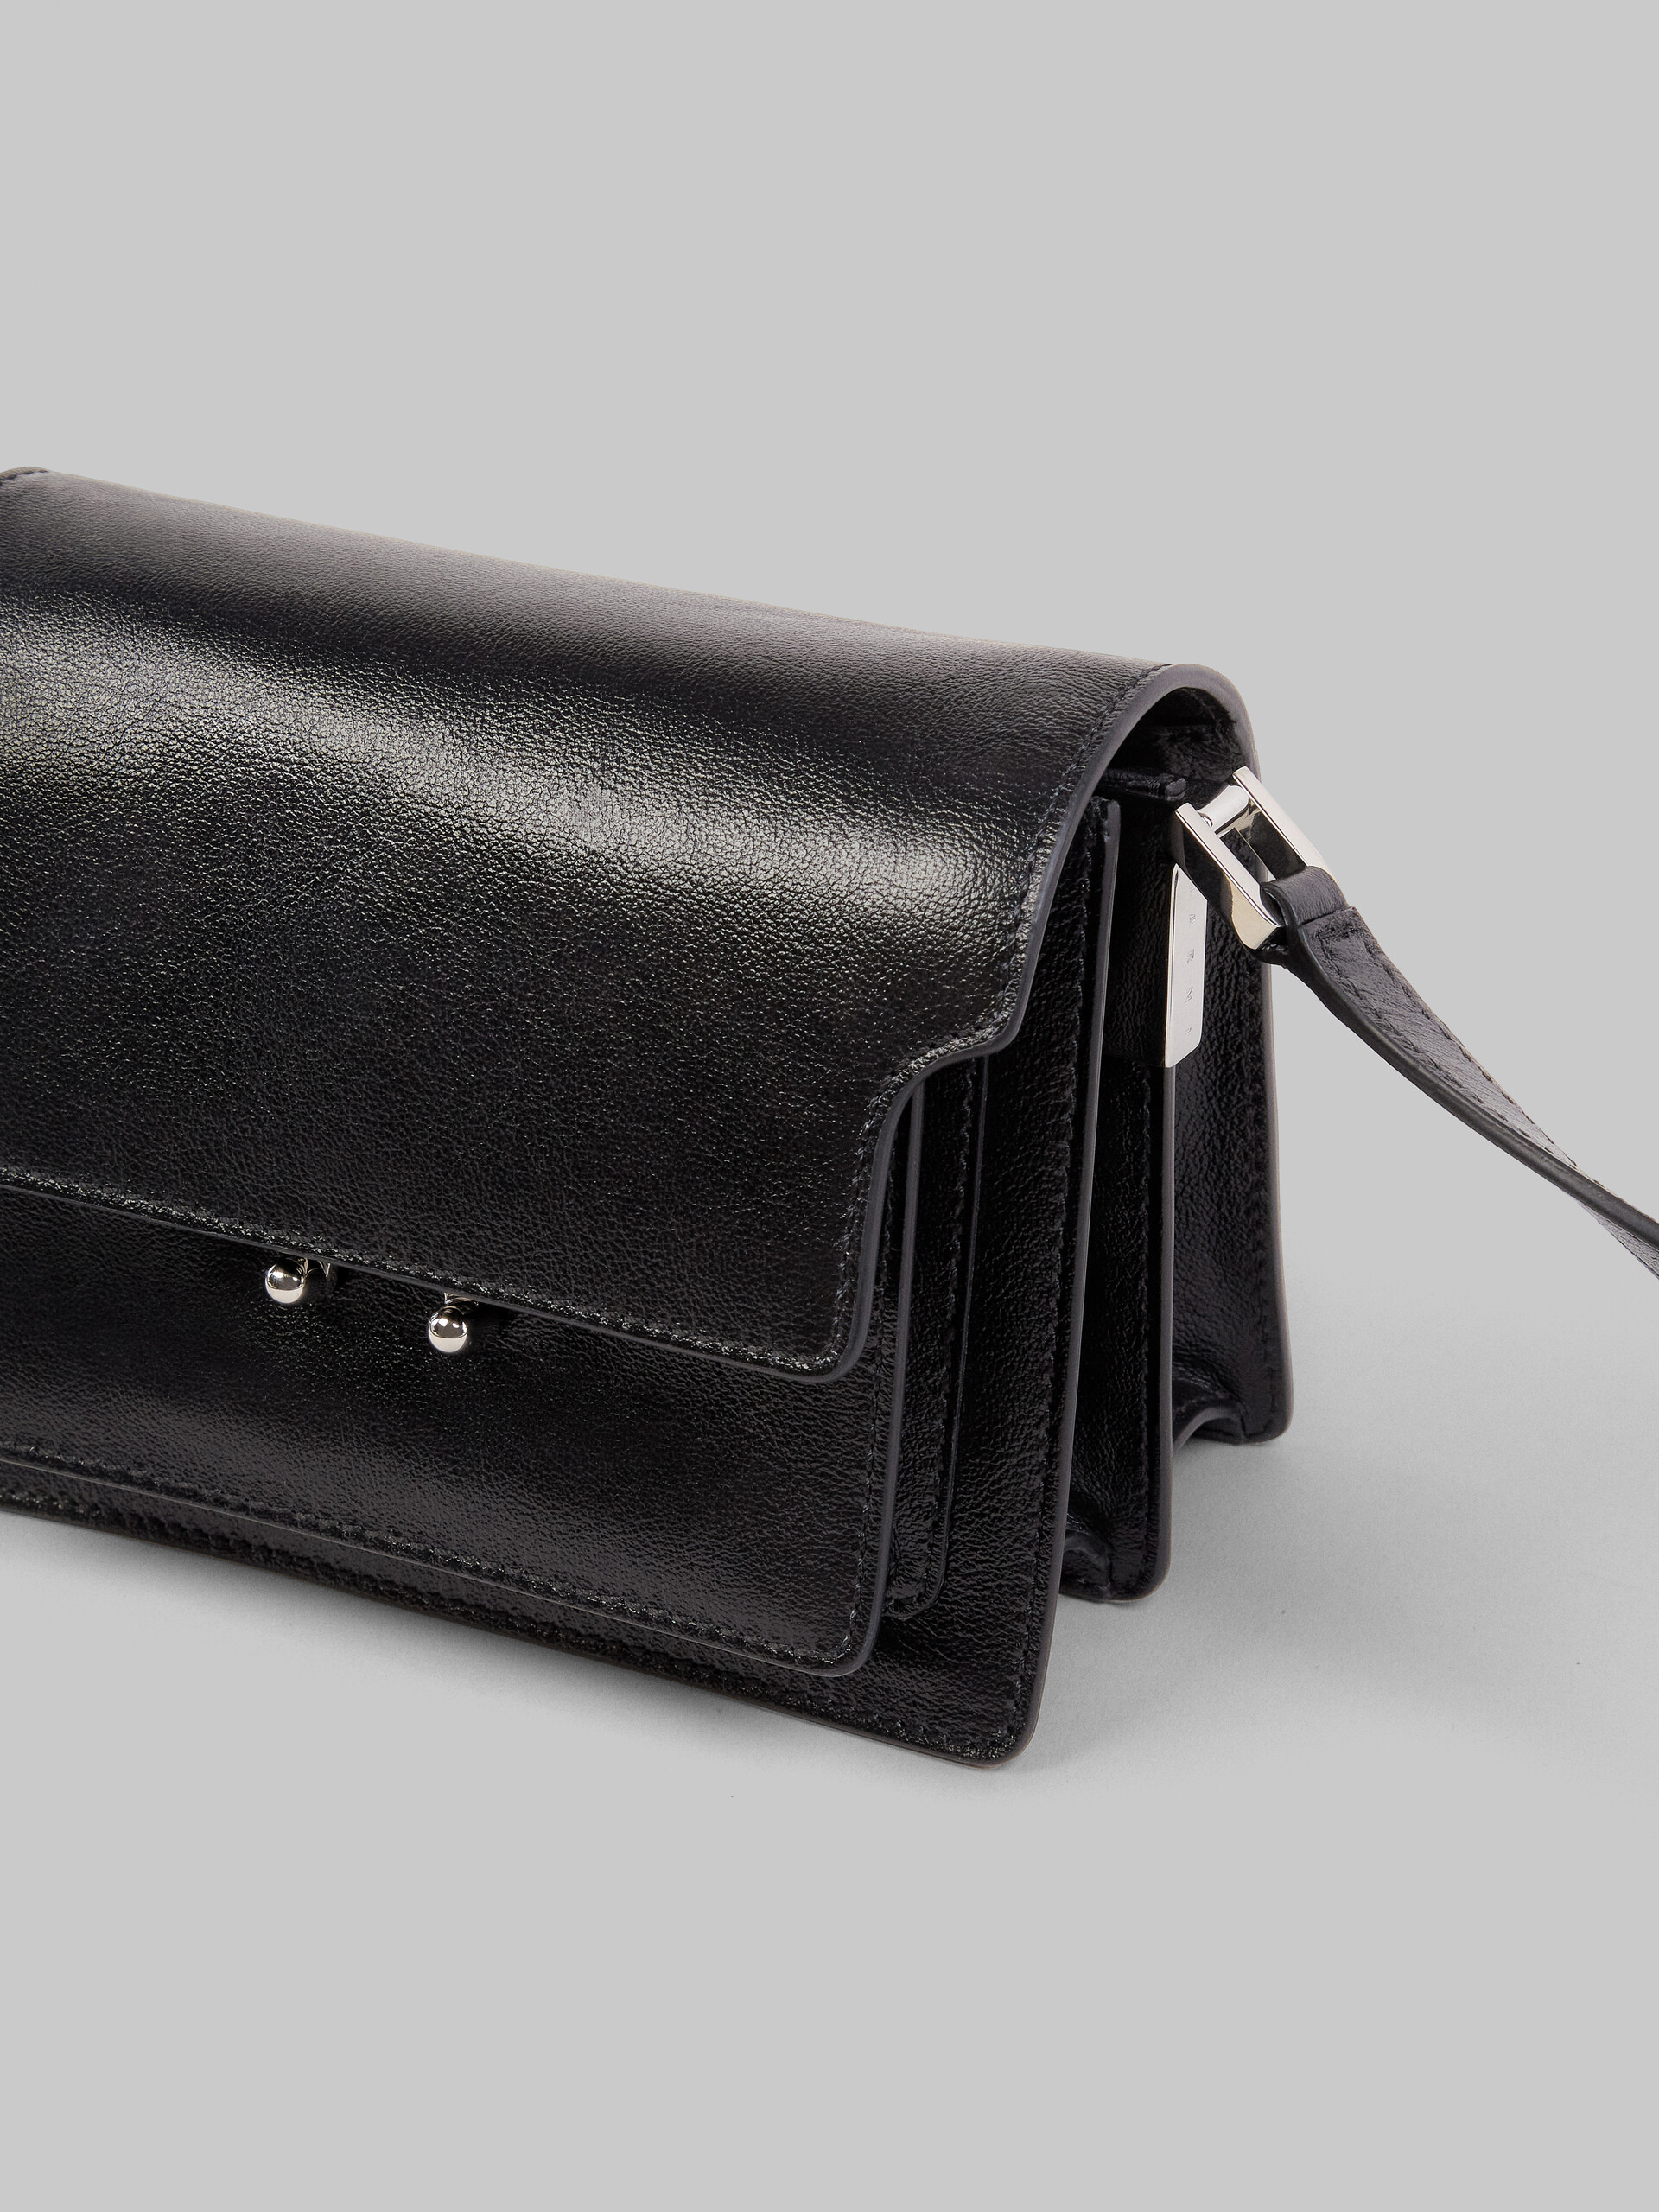 Mini sac porté épaule TRUNK SOFT en cuir de veau noir - Sacs portés épaule - Image 4